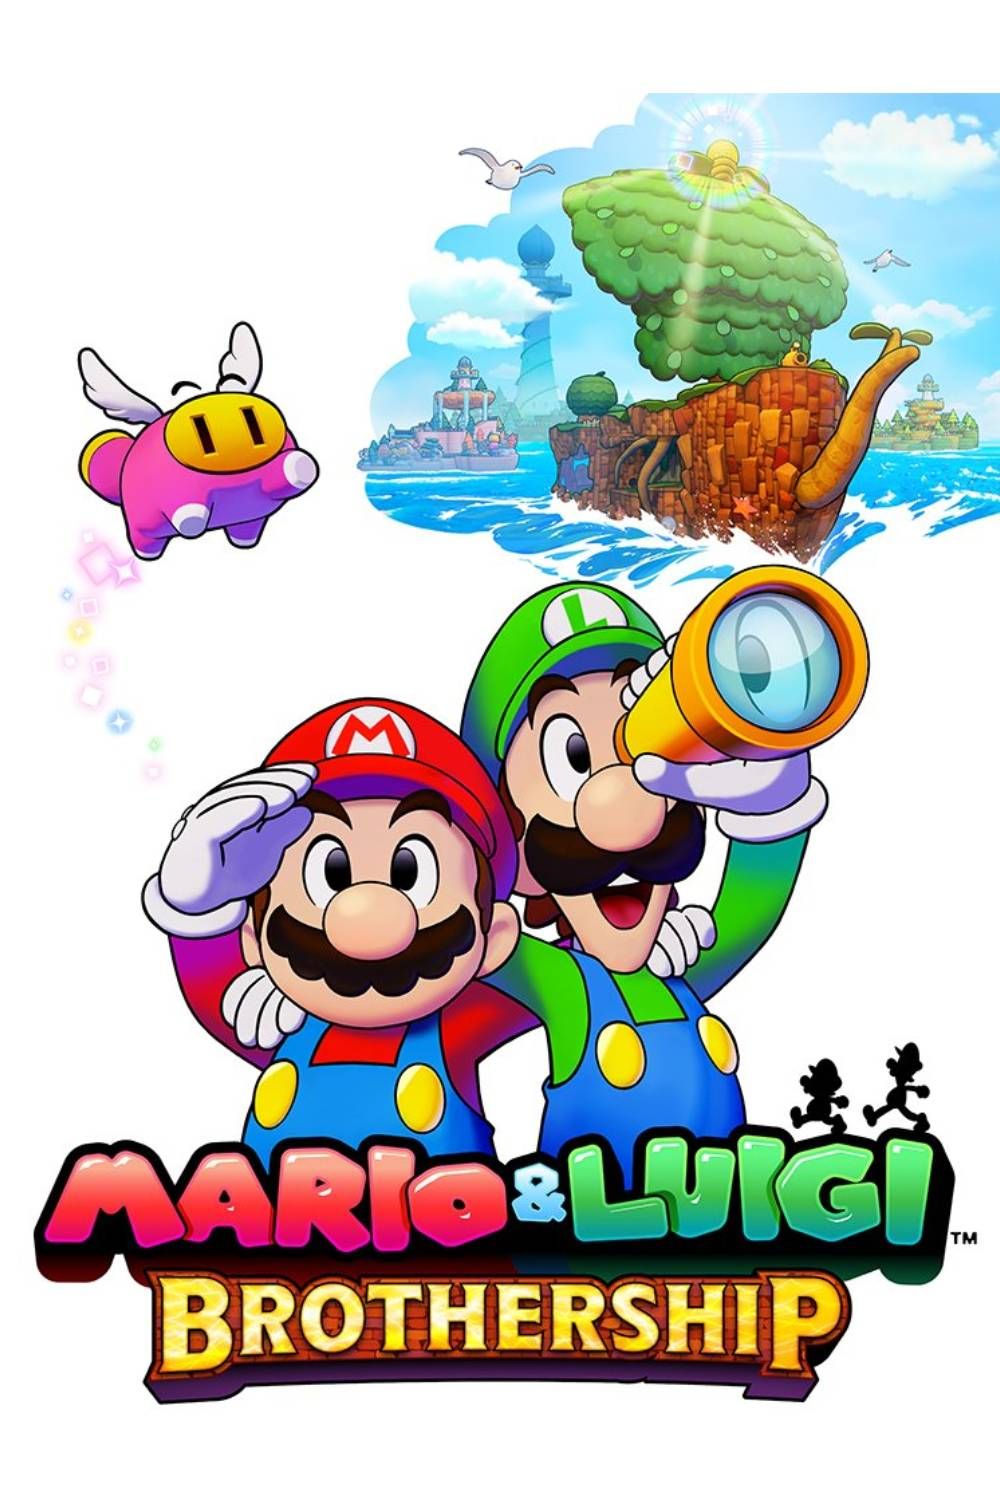 Mario & Luigi Brothership Tag Page Cover Art